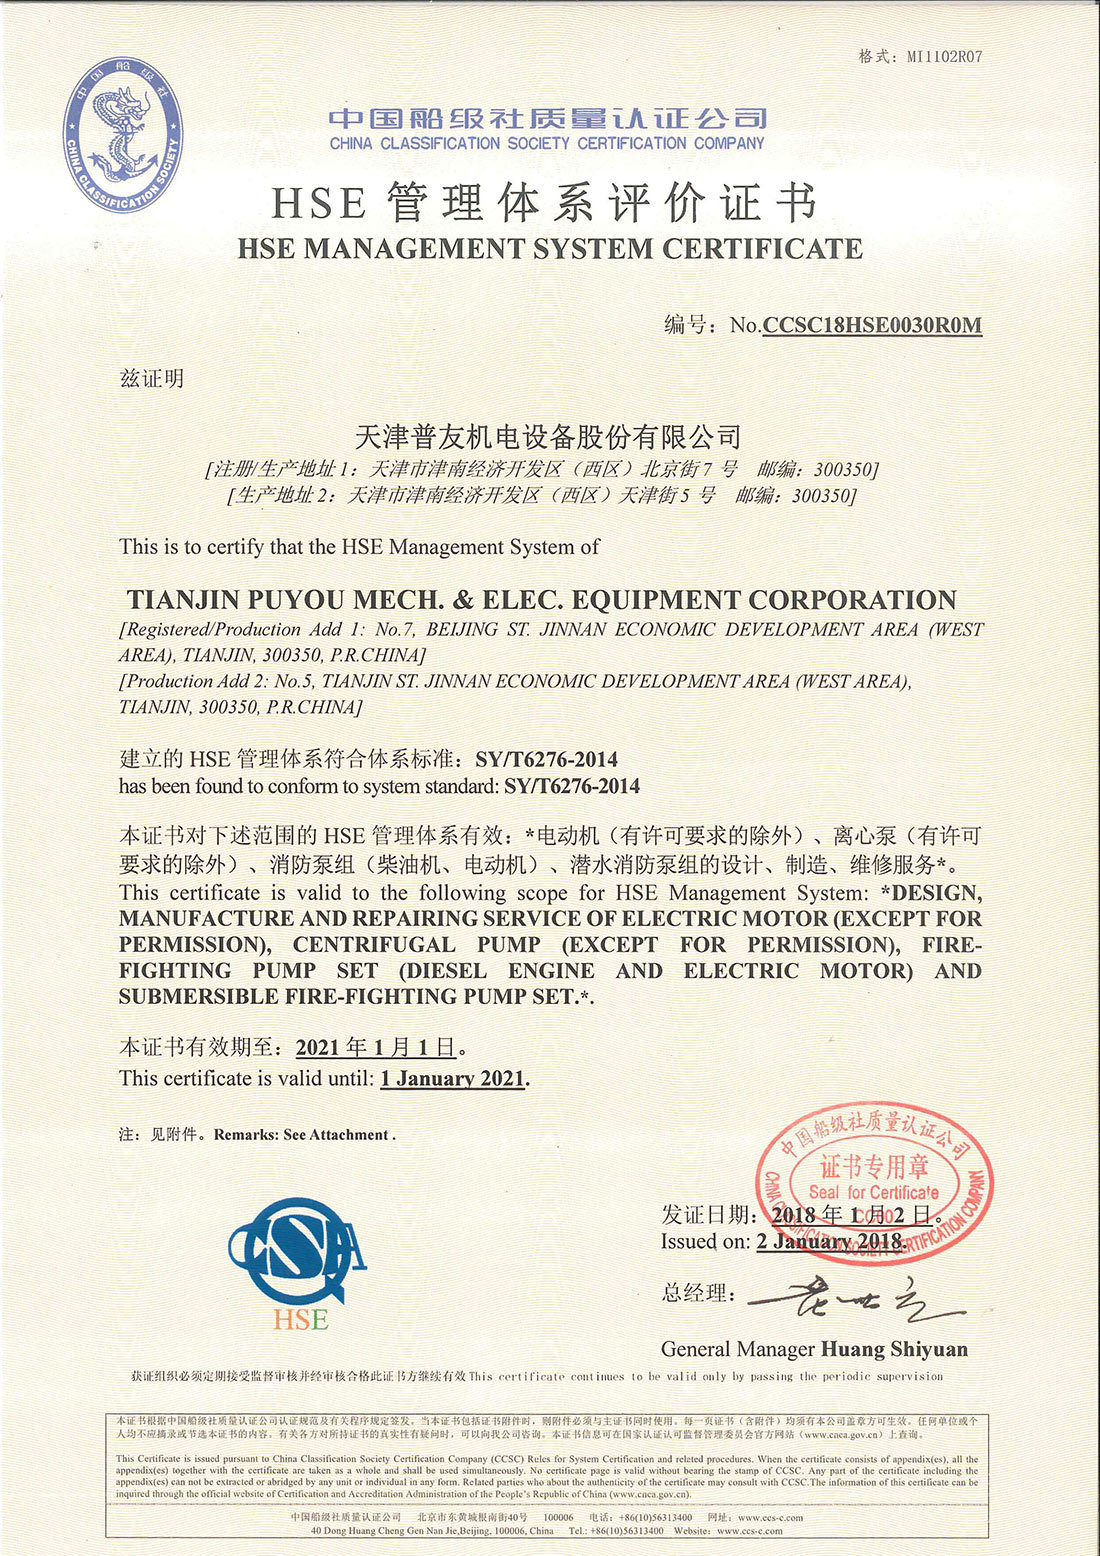 公司获得中国船级社环境管理体系认证、职业健康安全管理体系认证、HSE管理体系认证